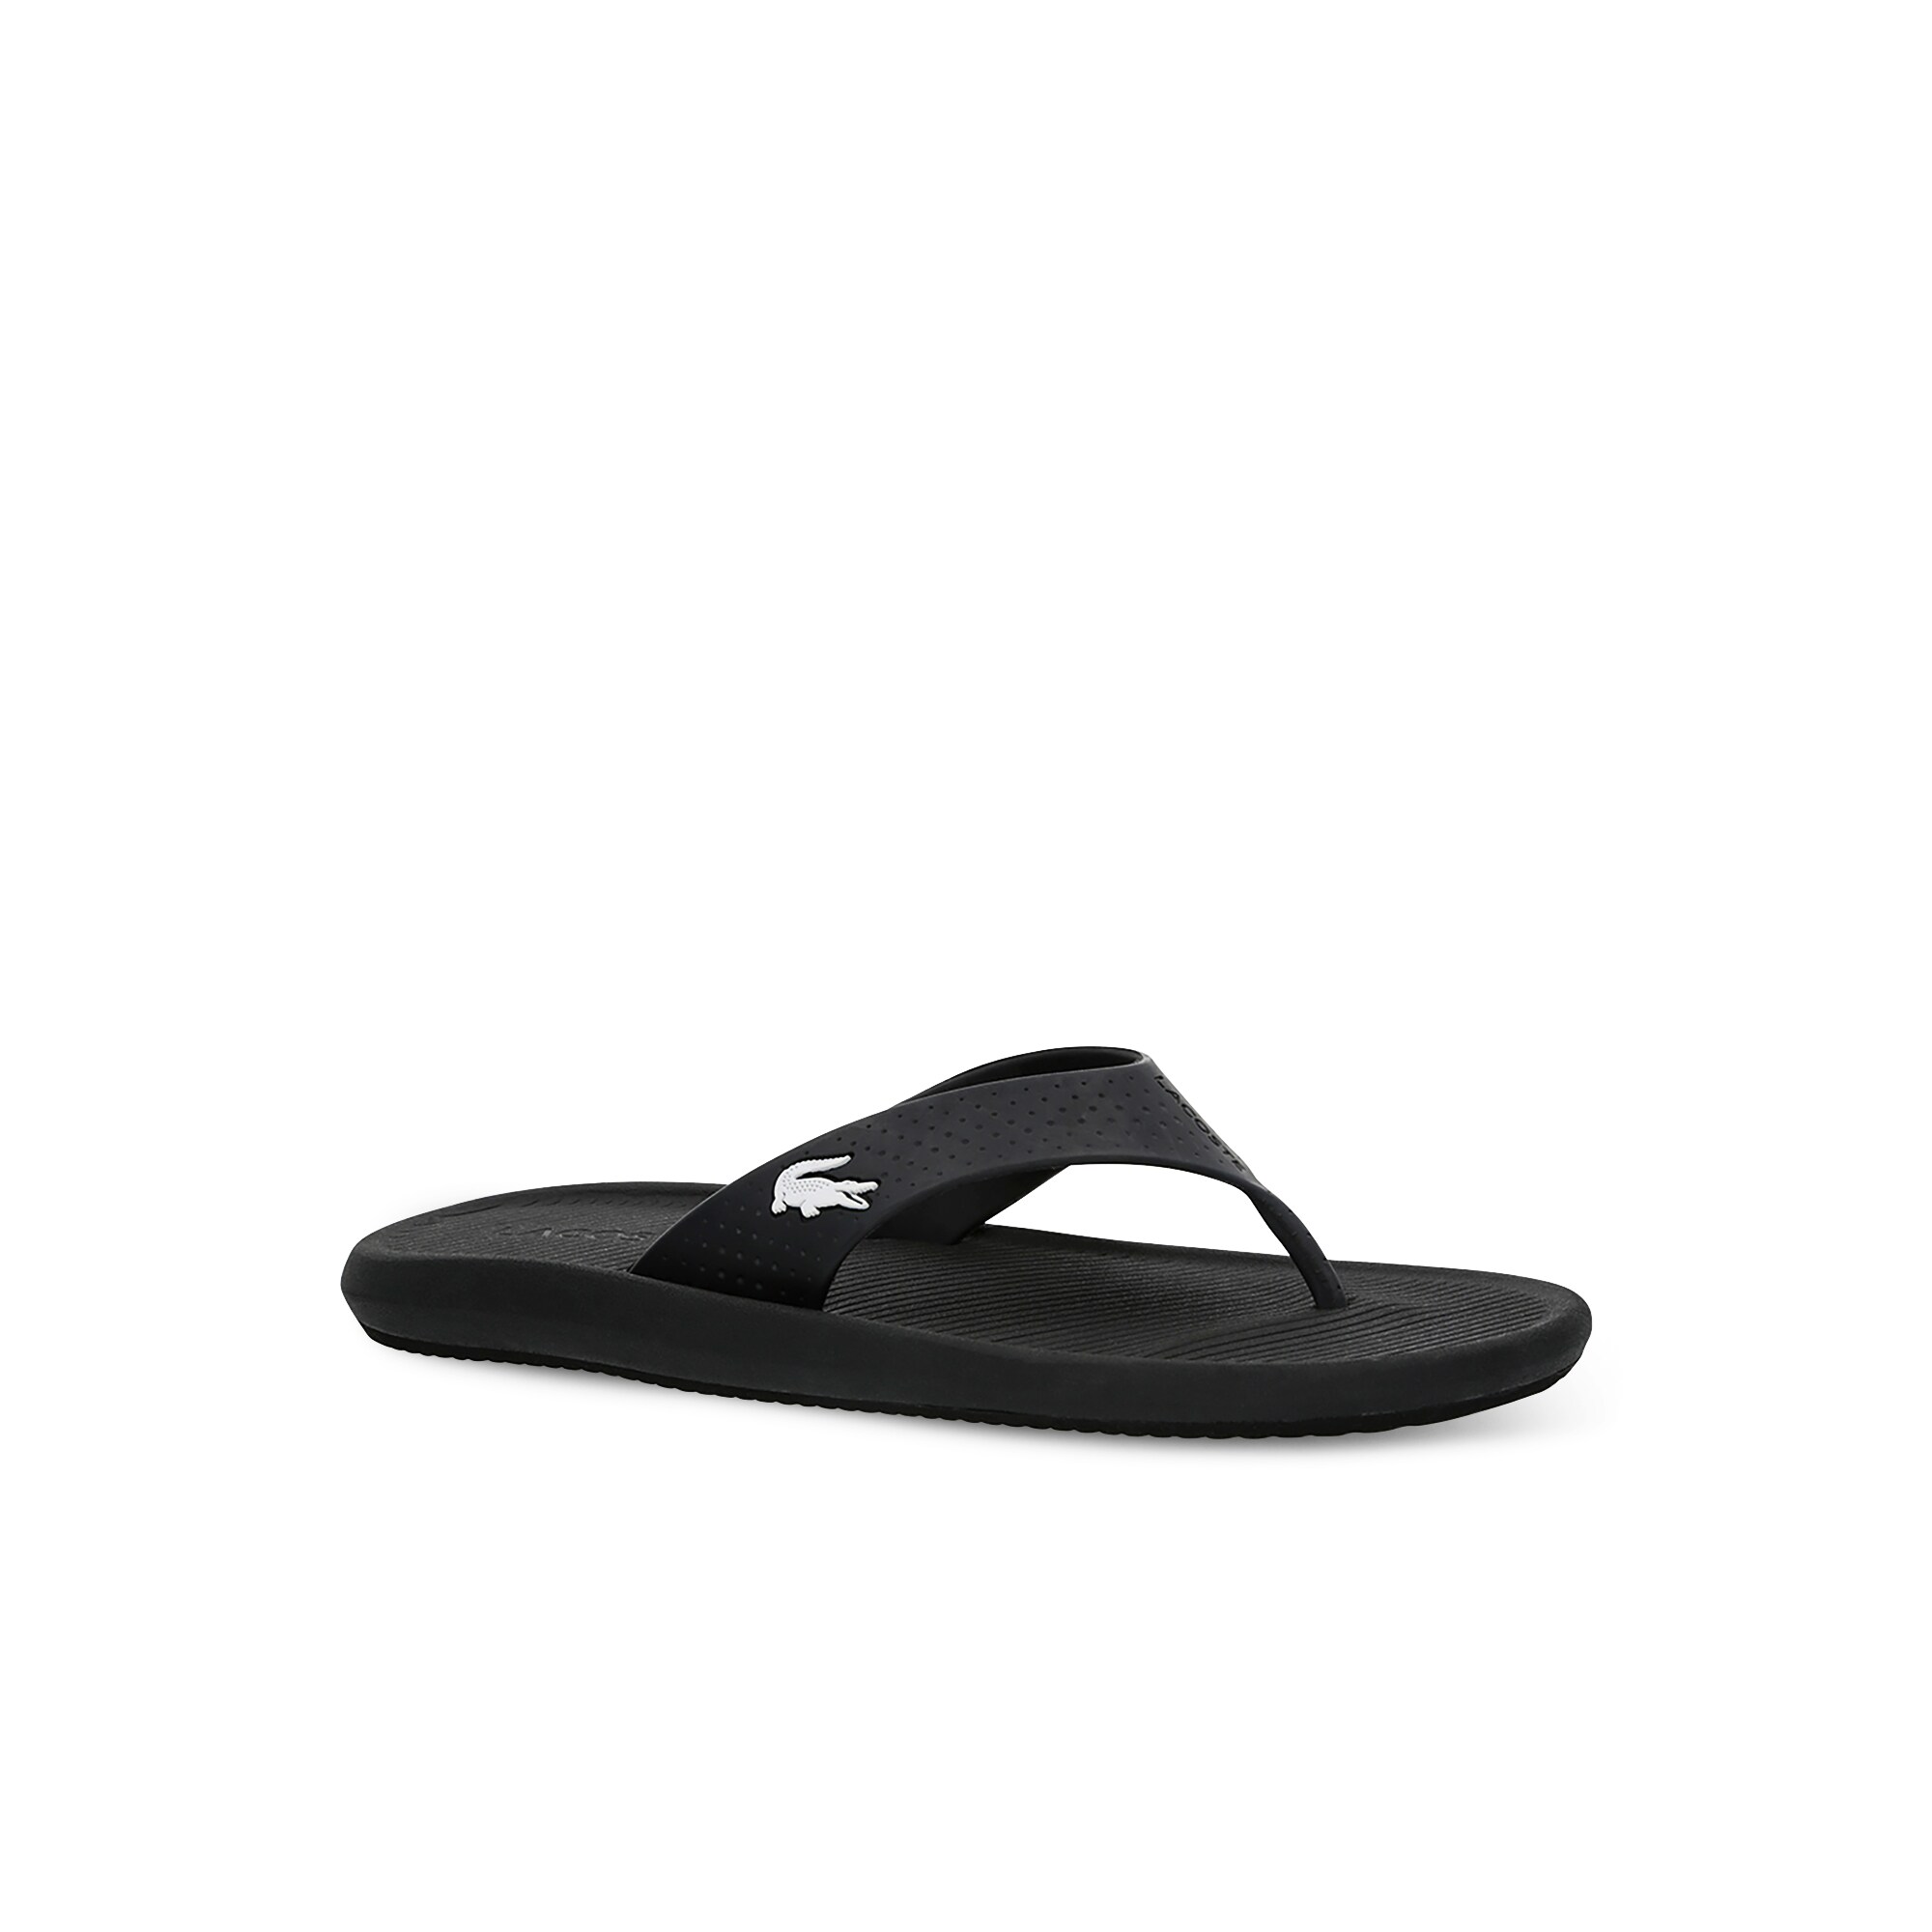 Lacoste Croco Sandal 219 1 Cma Erkek Siyah - Beyaz Terlik. 1